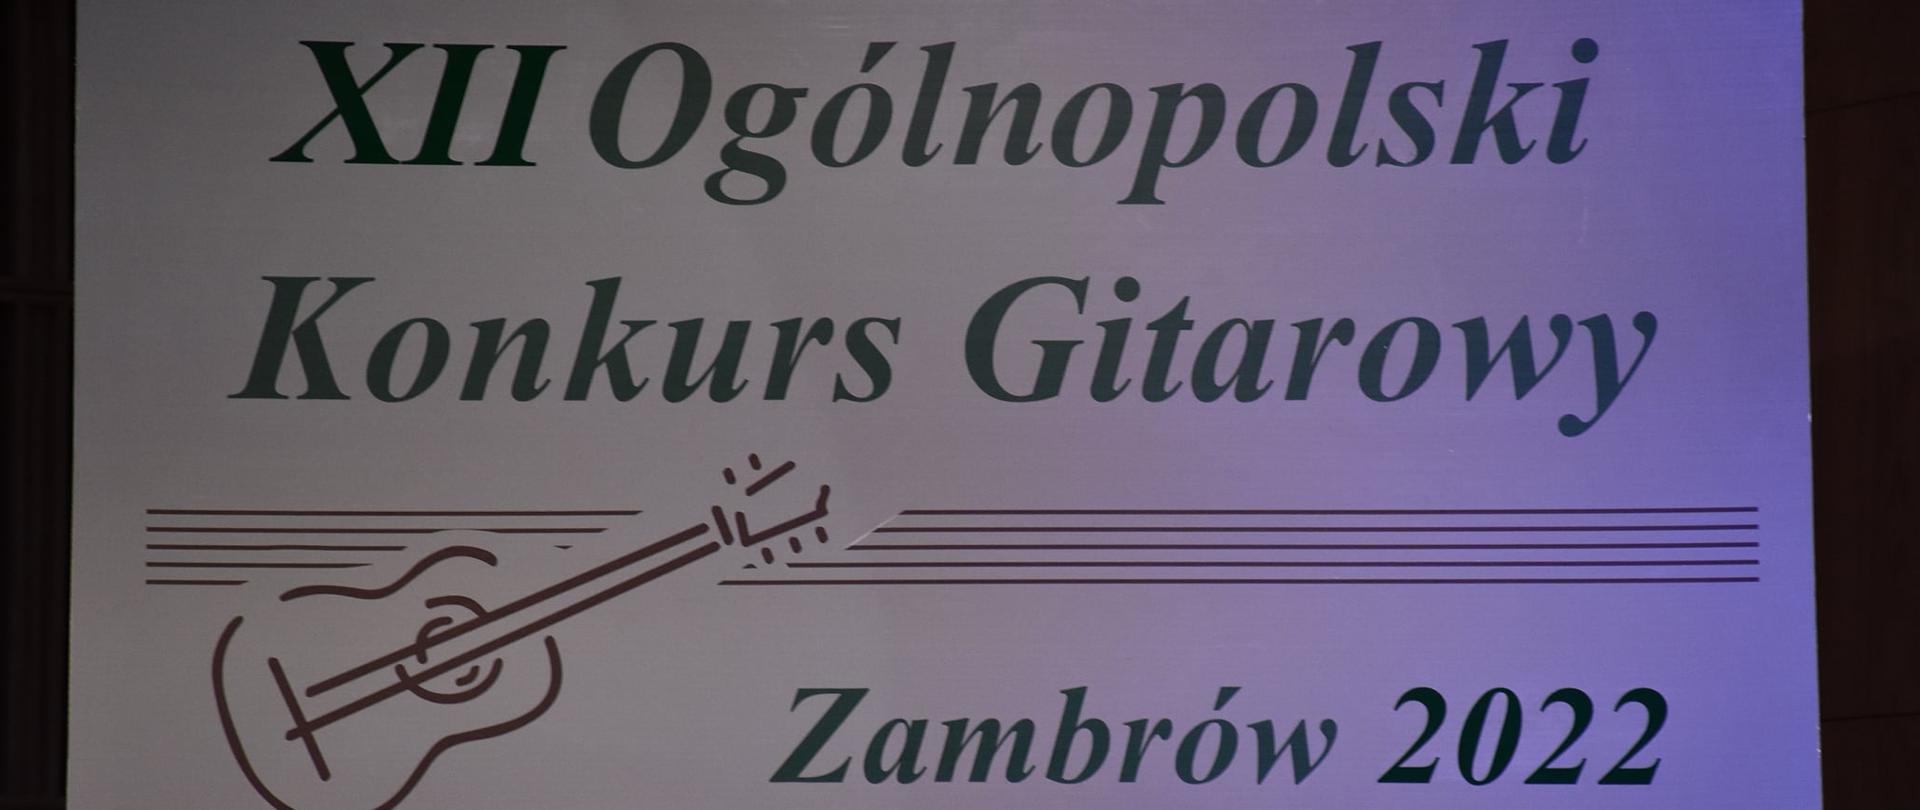 XII Ogólnopolski Konkurs Gitarowy